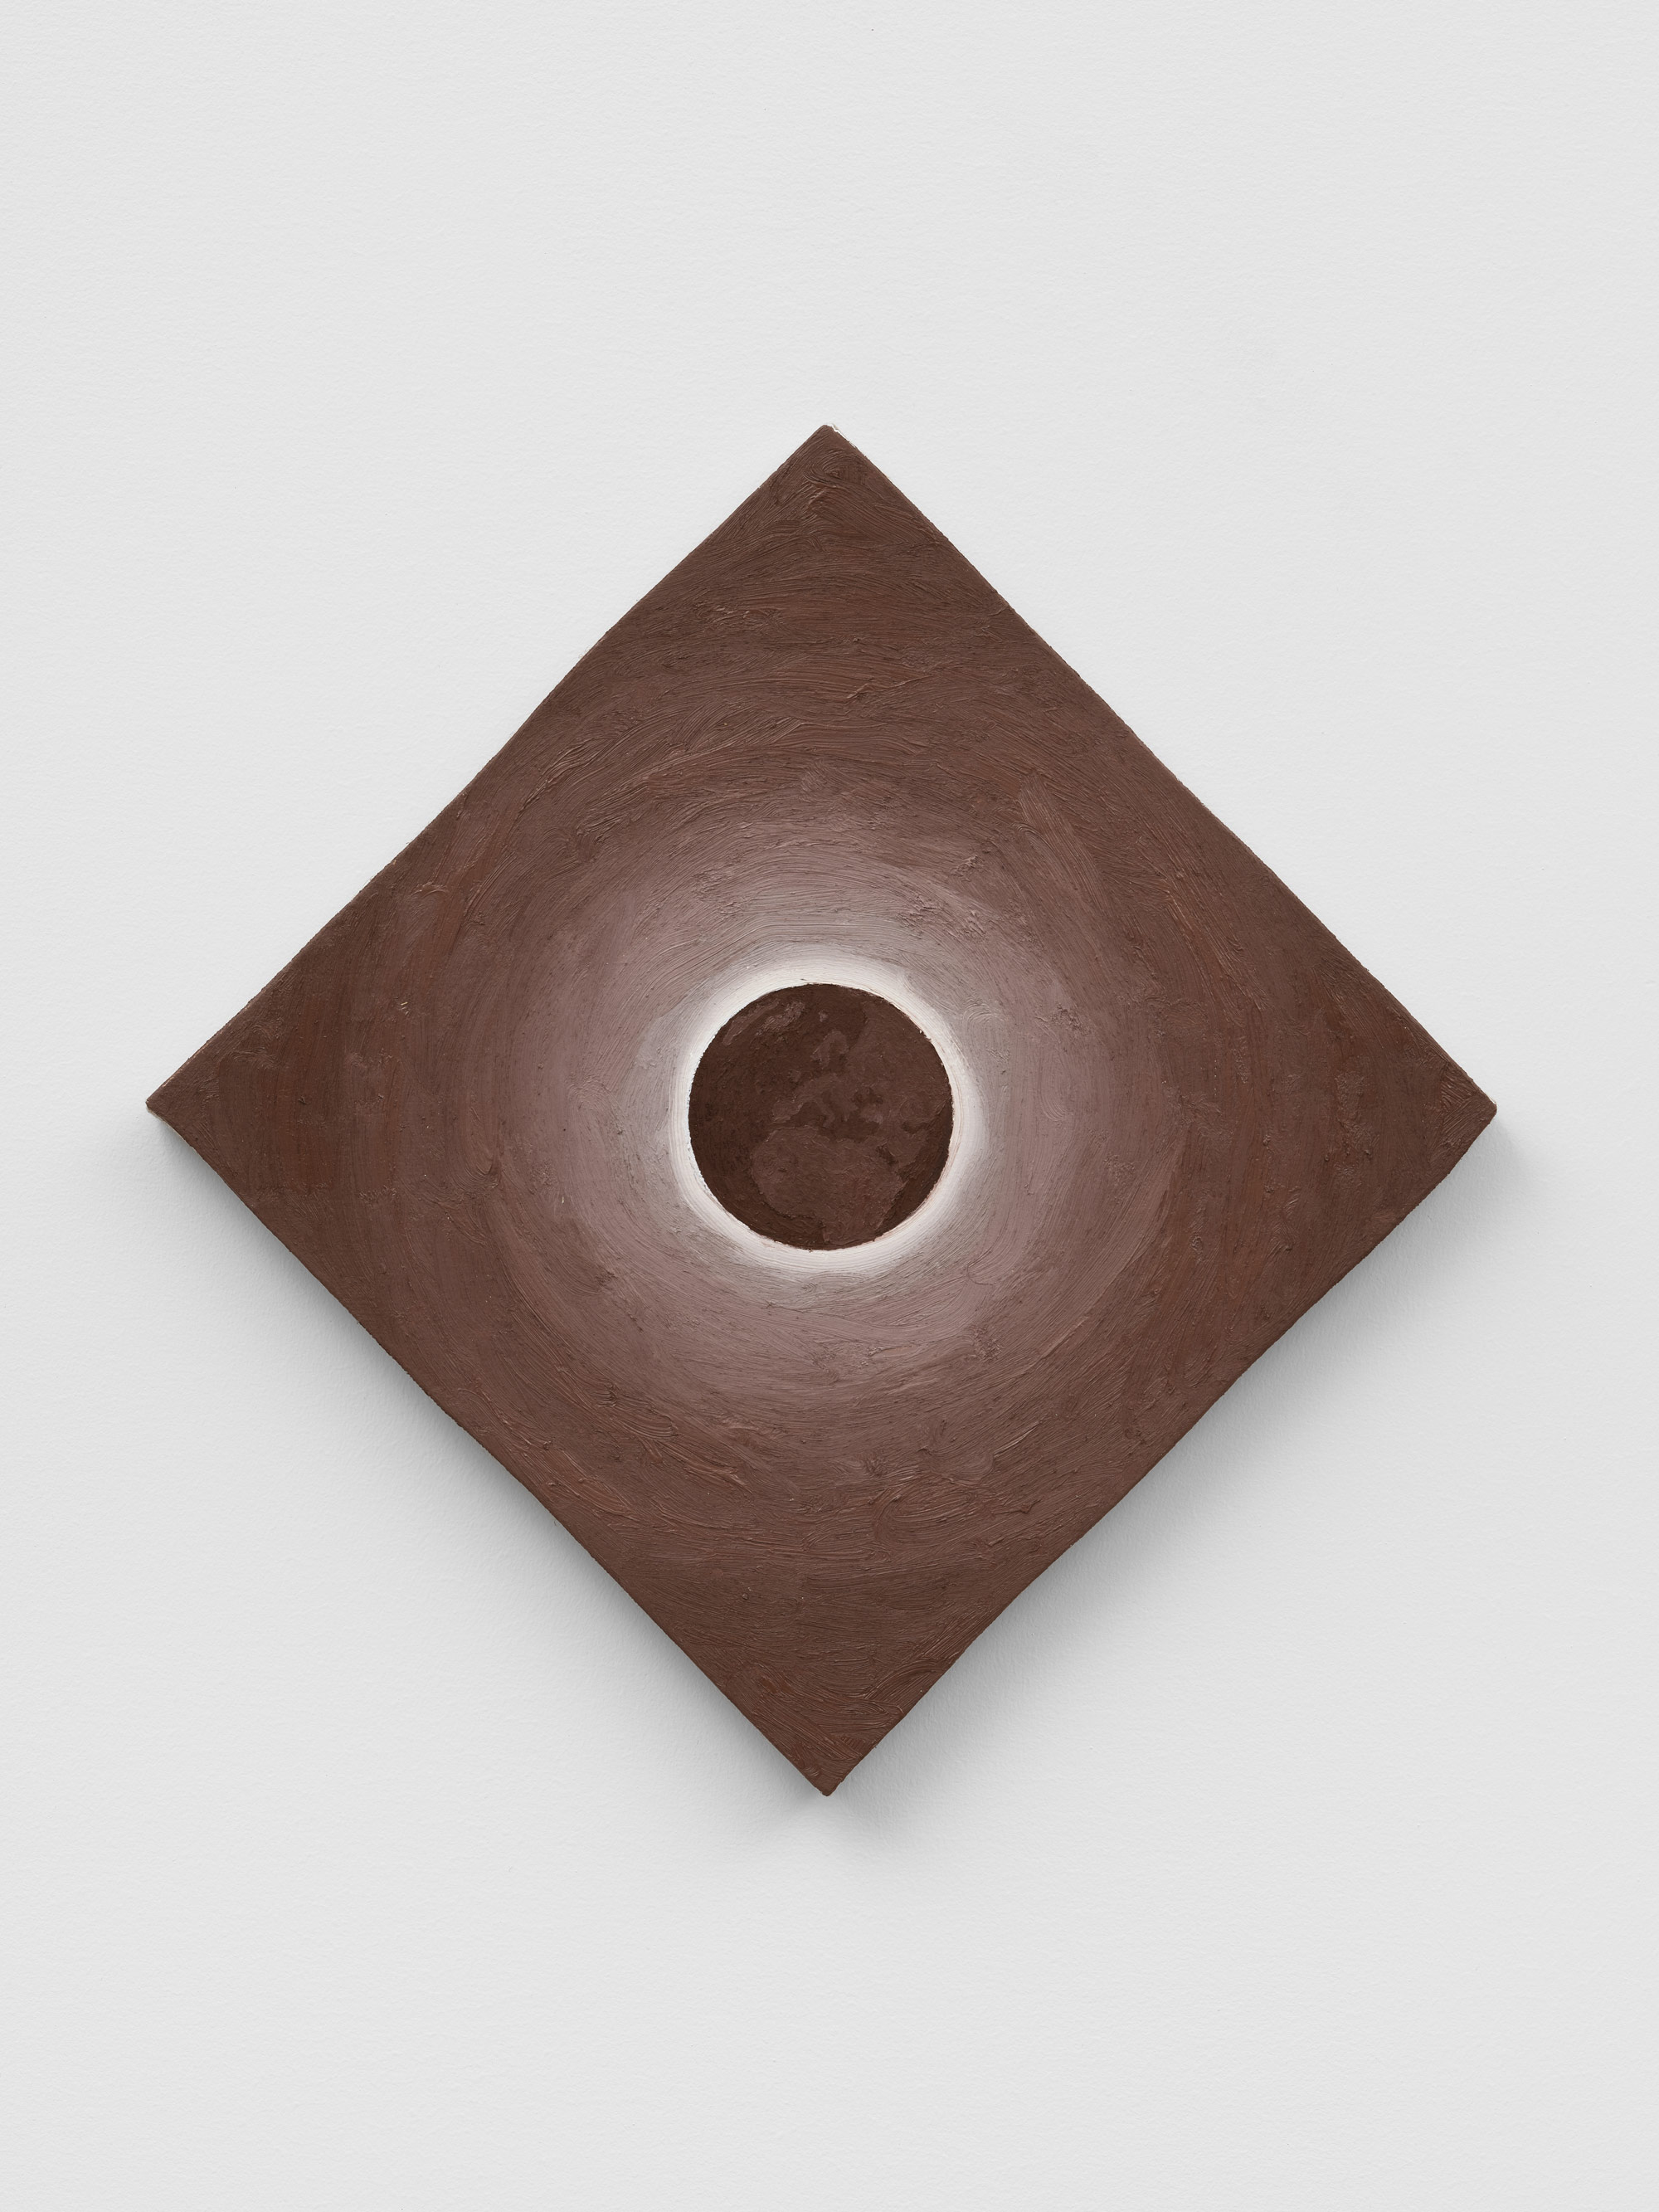 Alex Kwartler, Eclipse (Brown), 2022, Oil on linen, 16 x 16 in.